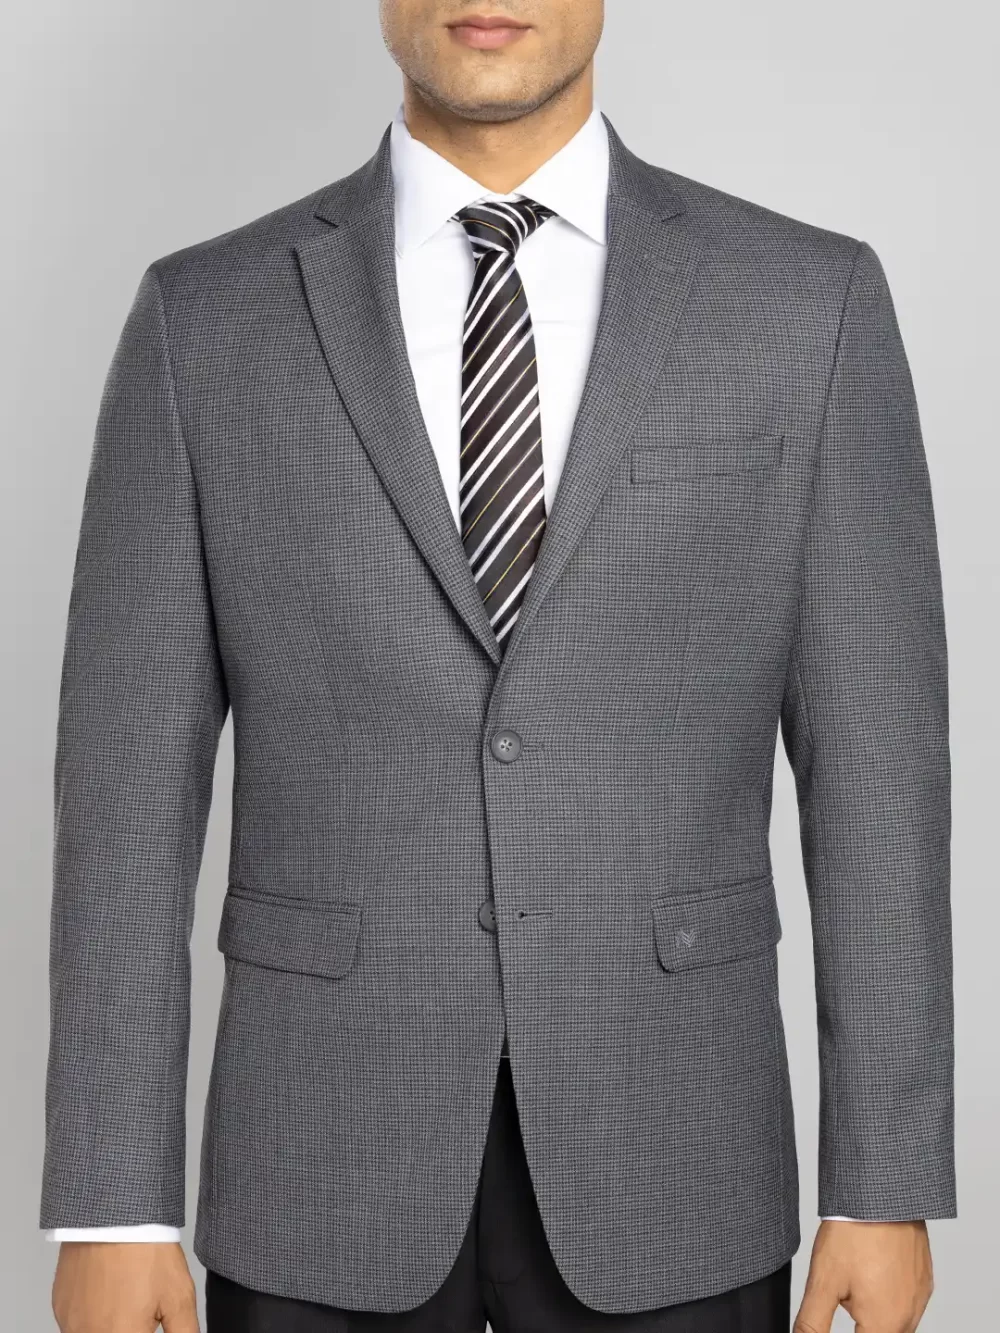 Men's Grey Textured Jacket